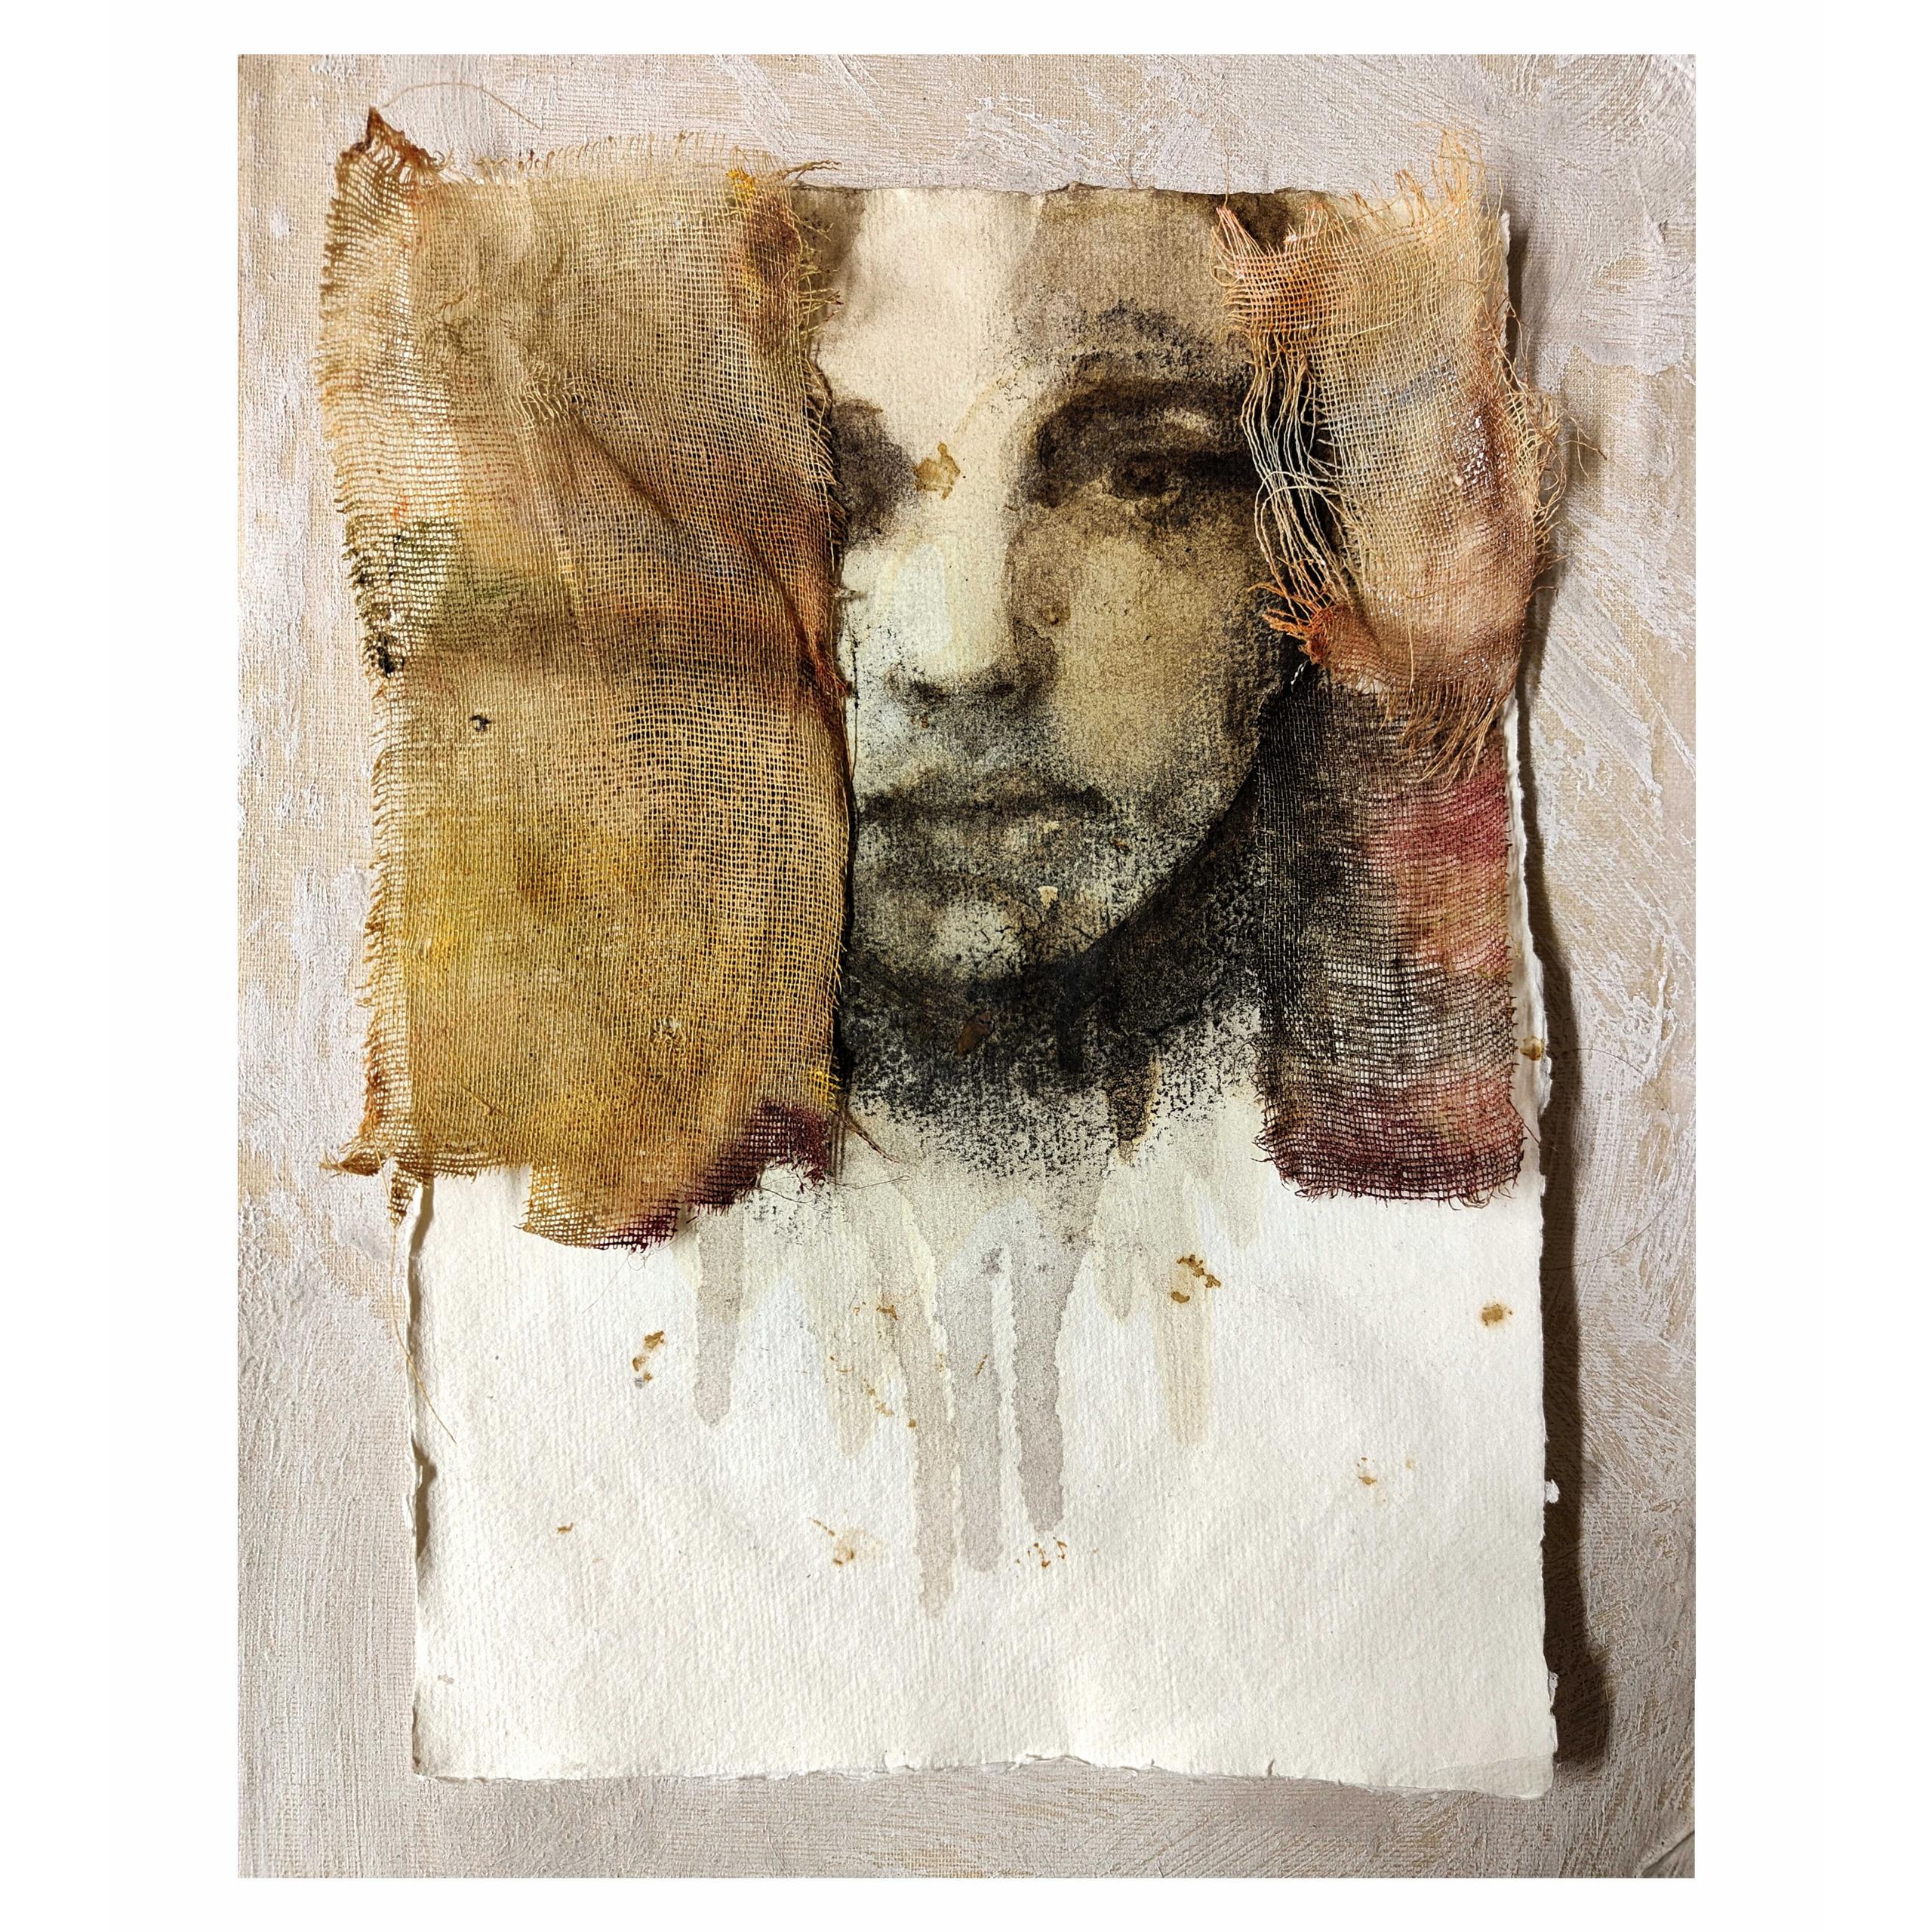 Simona Fedele Artista, carta Nepalese fatta a mano, mostra d'arte, sanguigna, carboncino, olio e pastelli, olio su tela, su garza, made in Italy